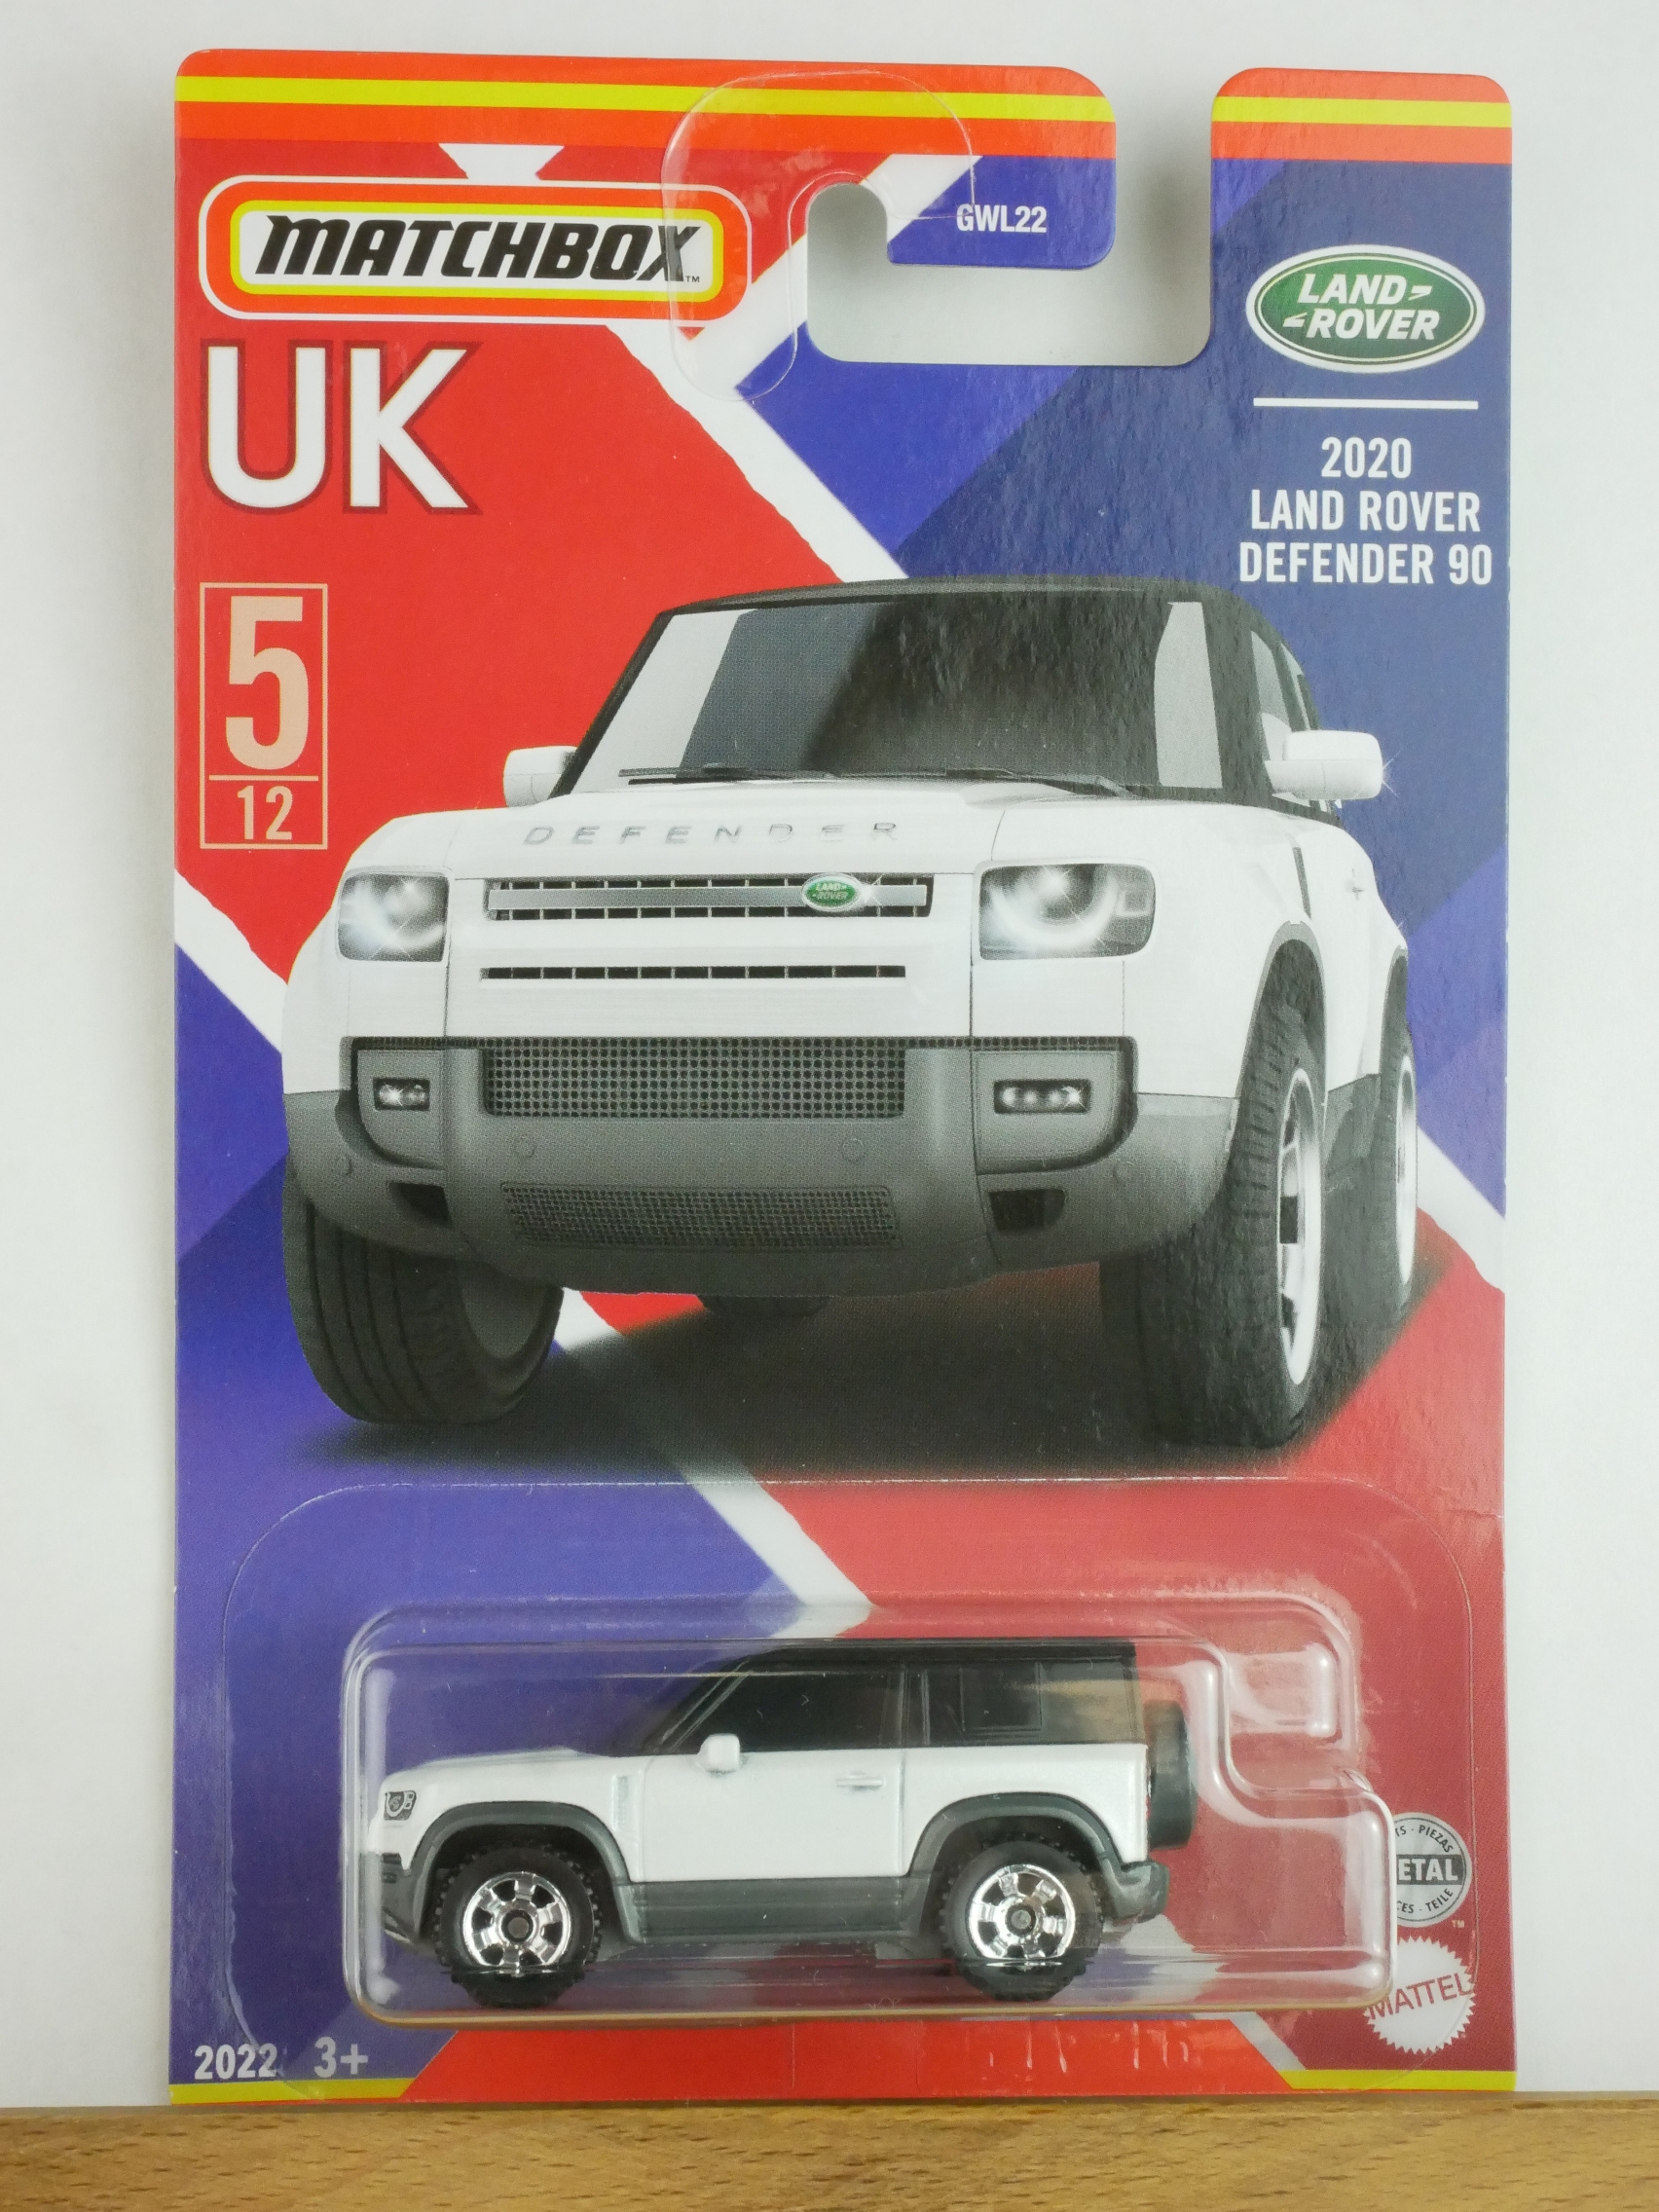 # 05 2020 Land Rover Defender 90 - 10151